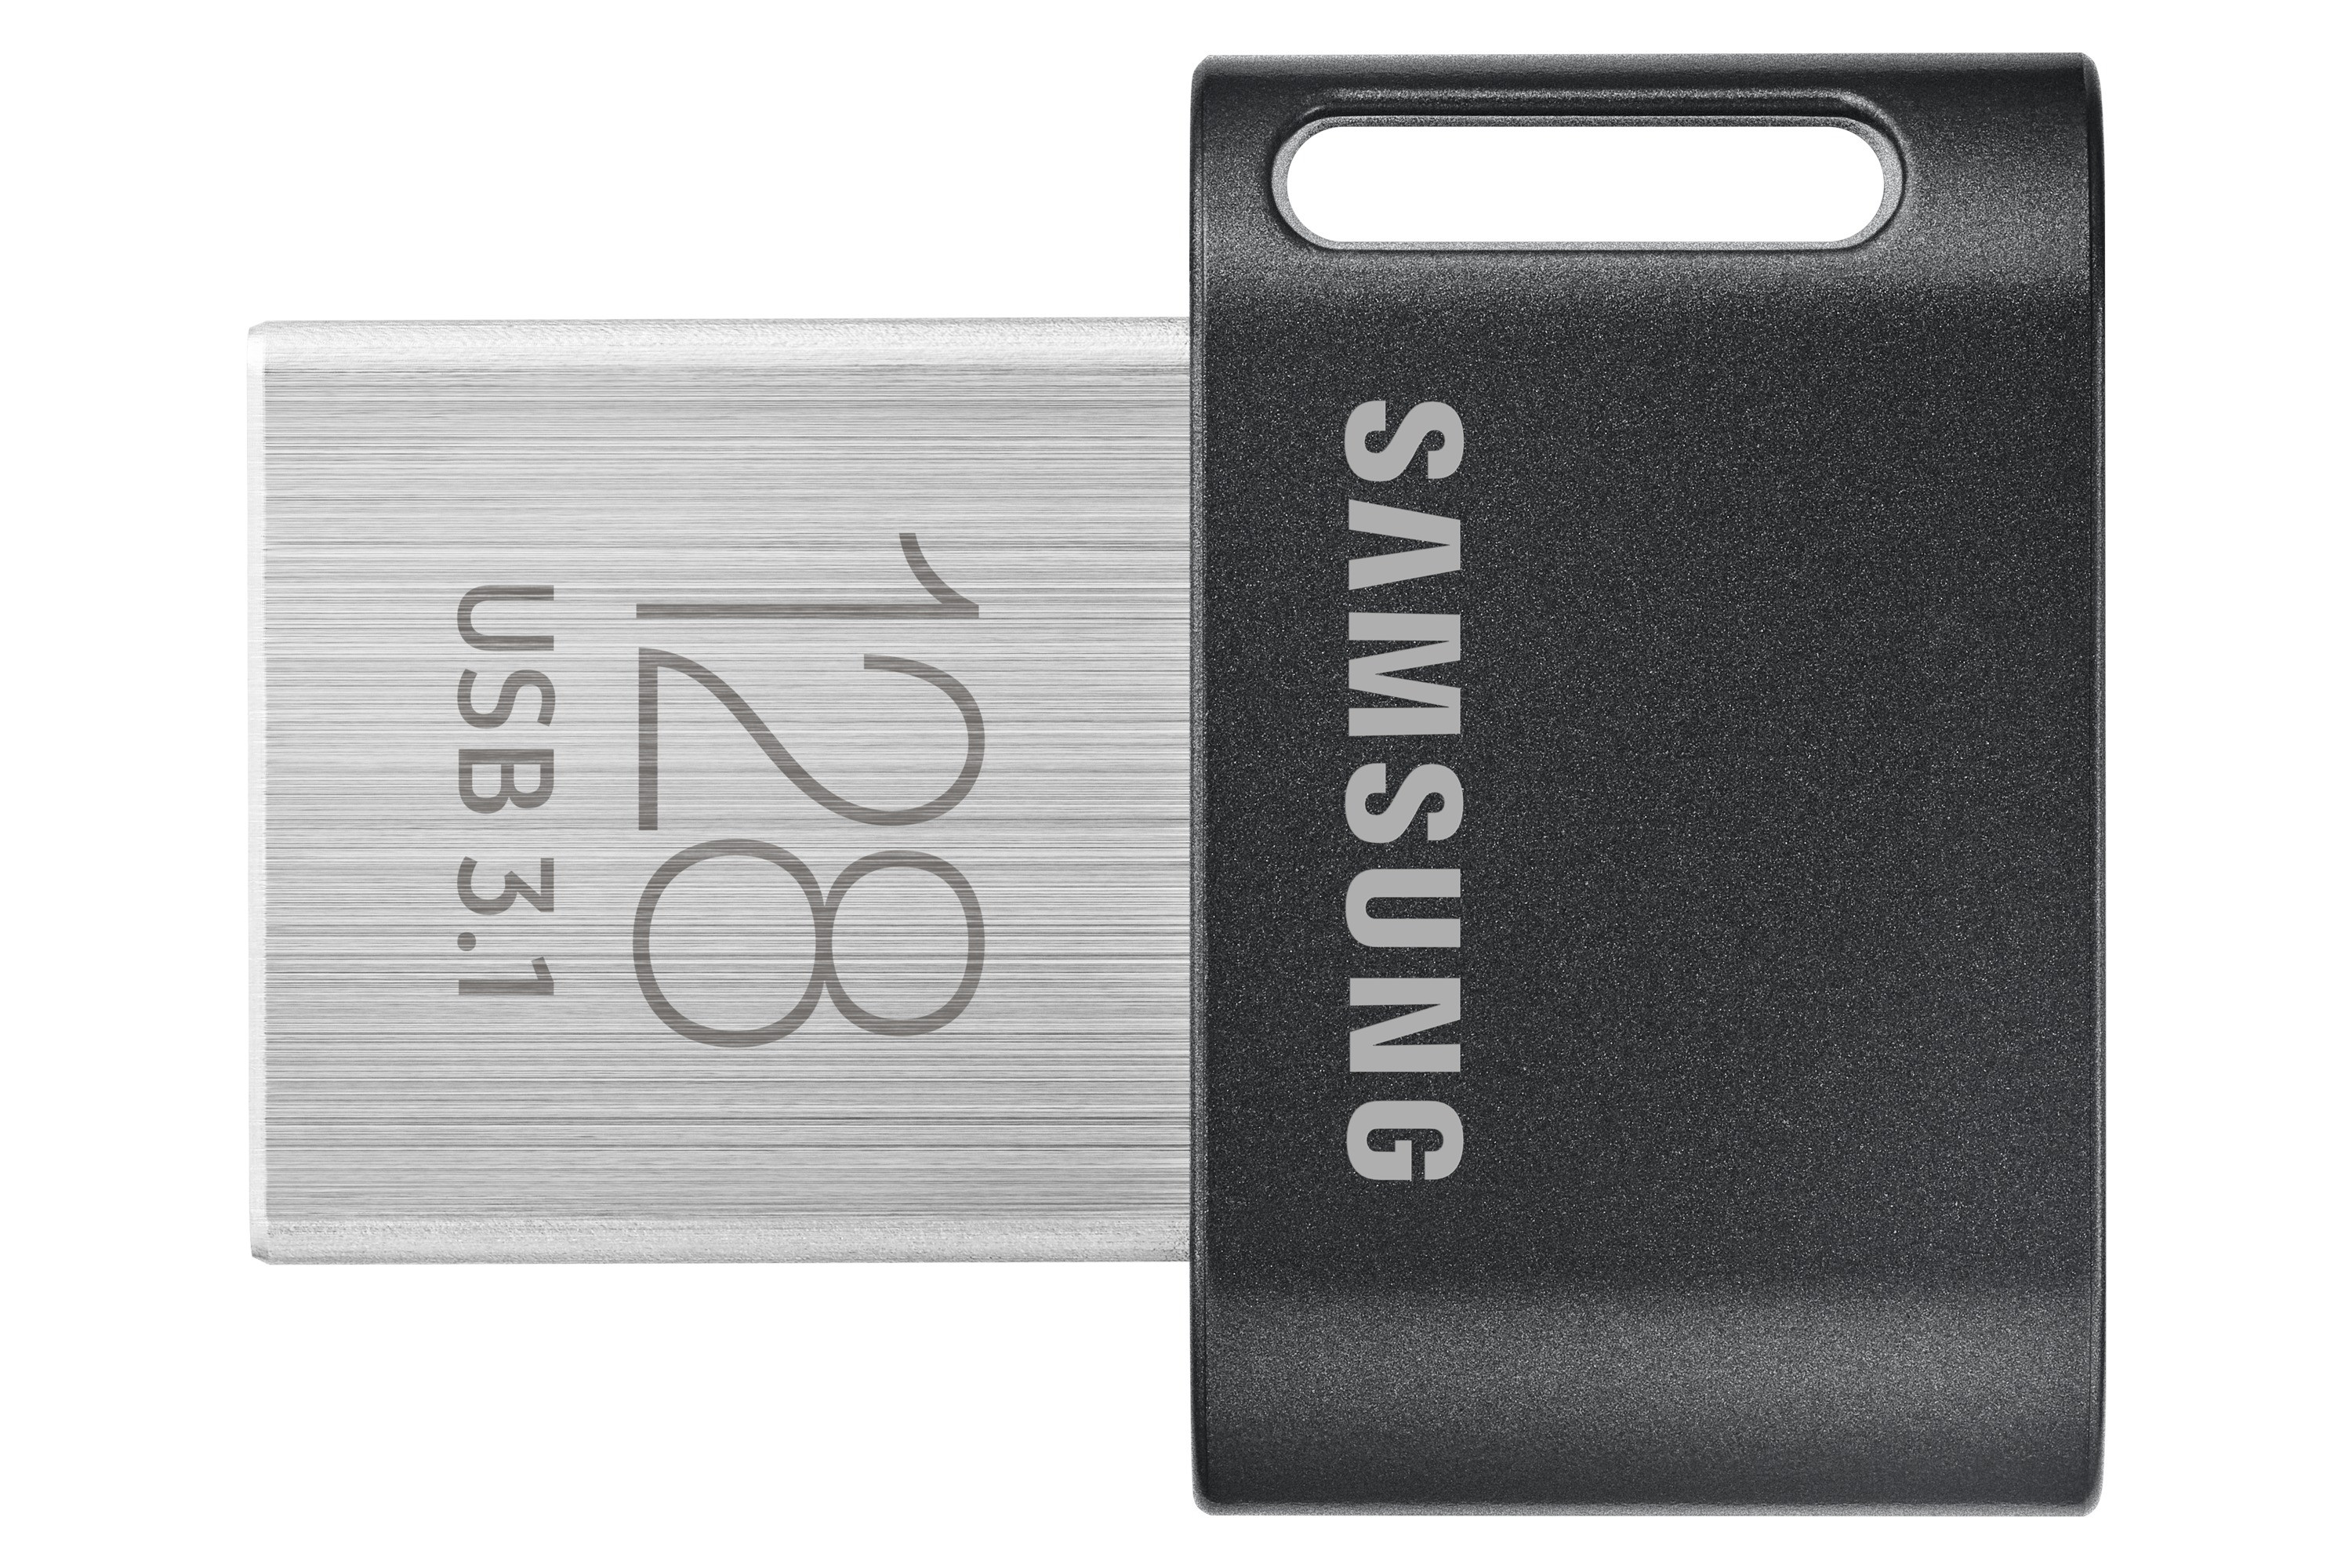 Samsung FIT Plus USB Stick 128GB USB-sticks Zwart